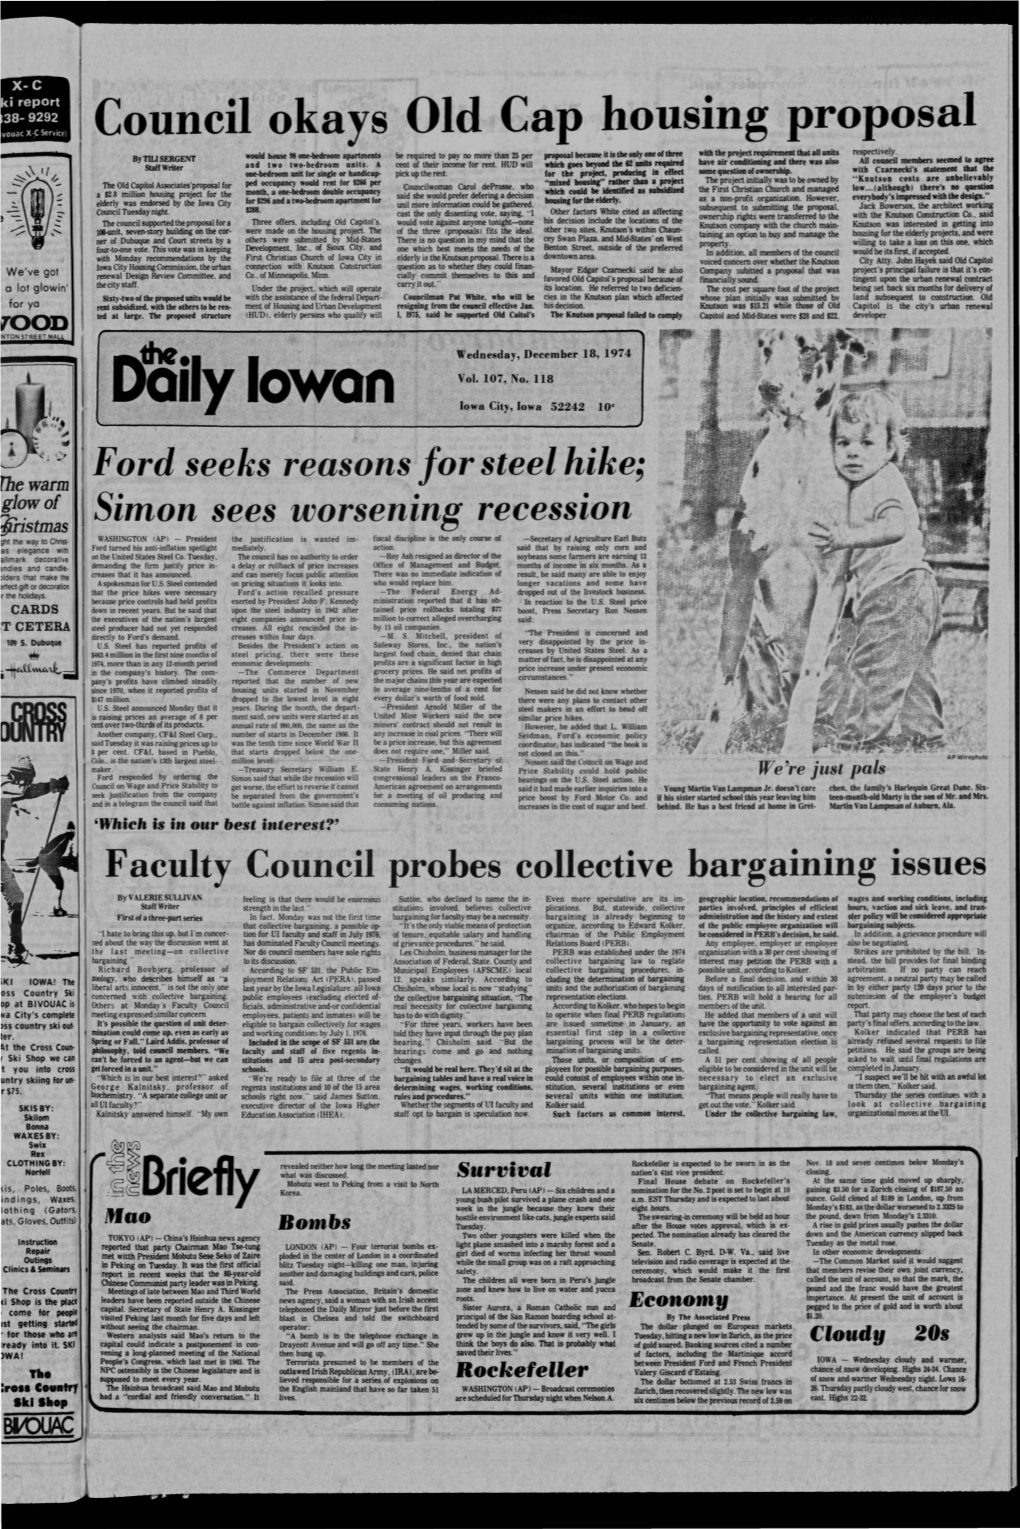 Daily Iowan (Iowa City, Iowa), 1974-12-18